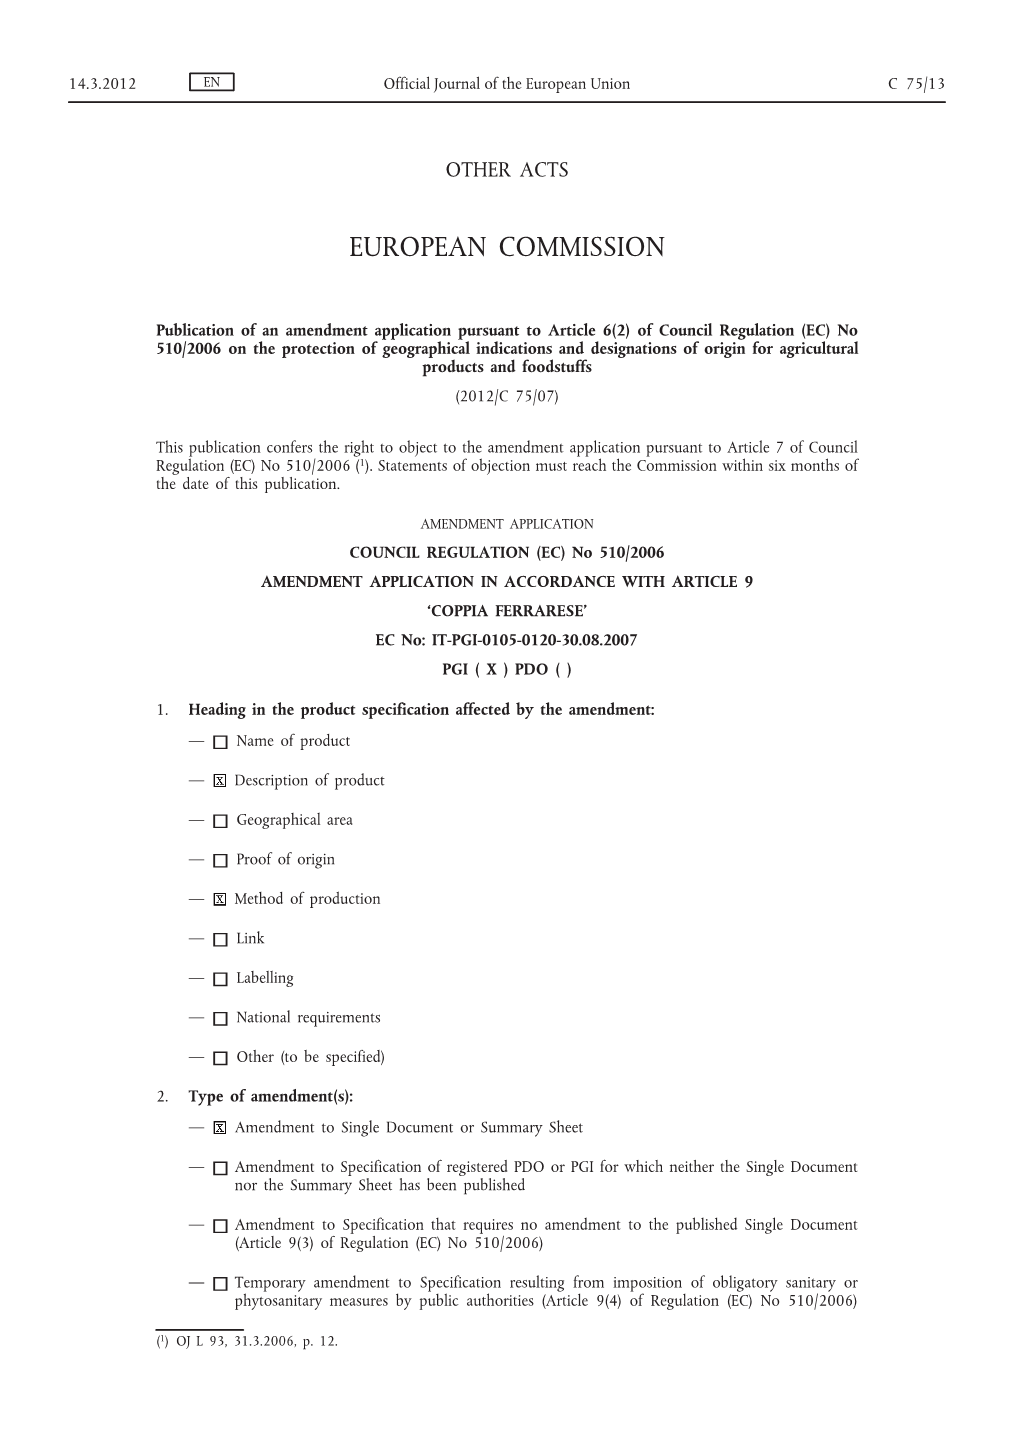 Of Council Regulation (EC)